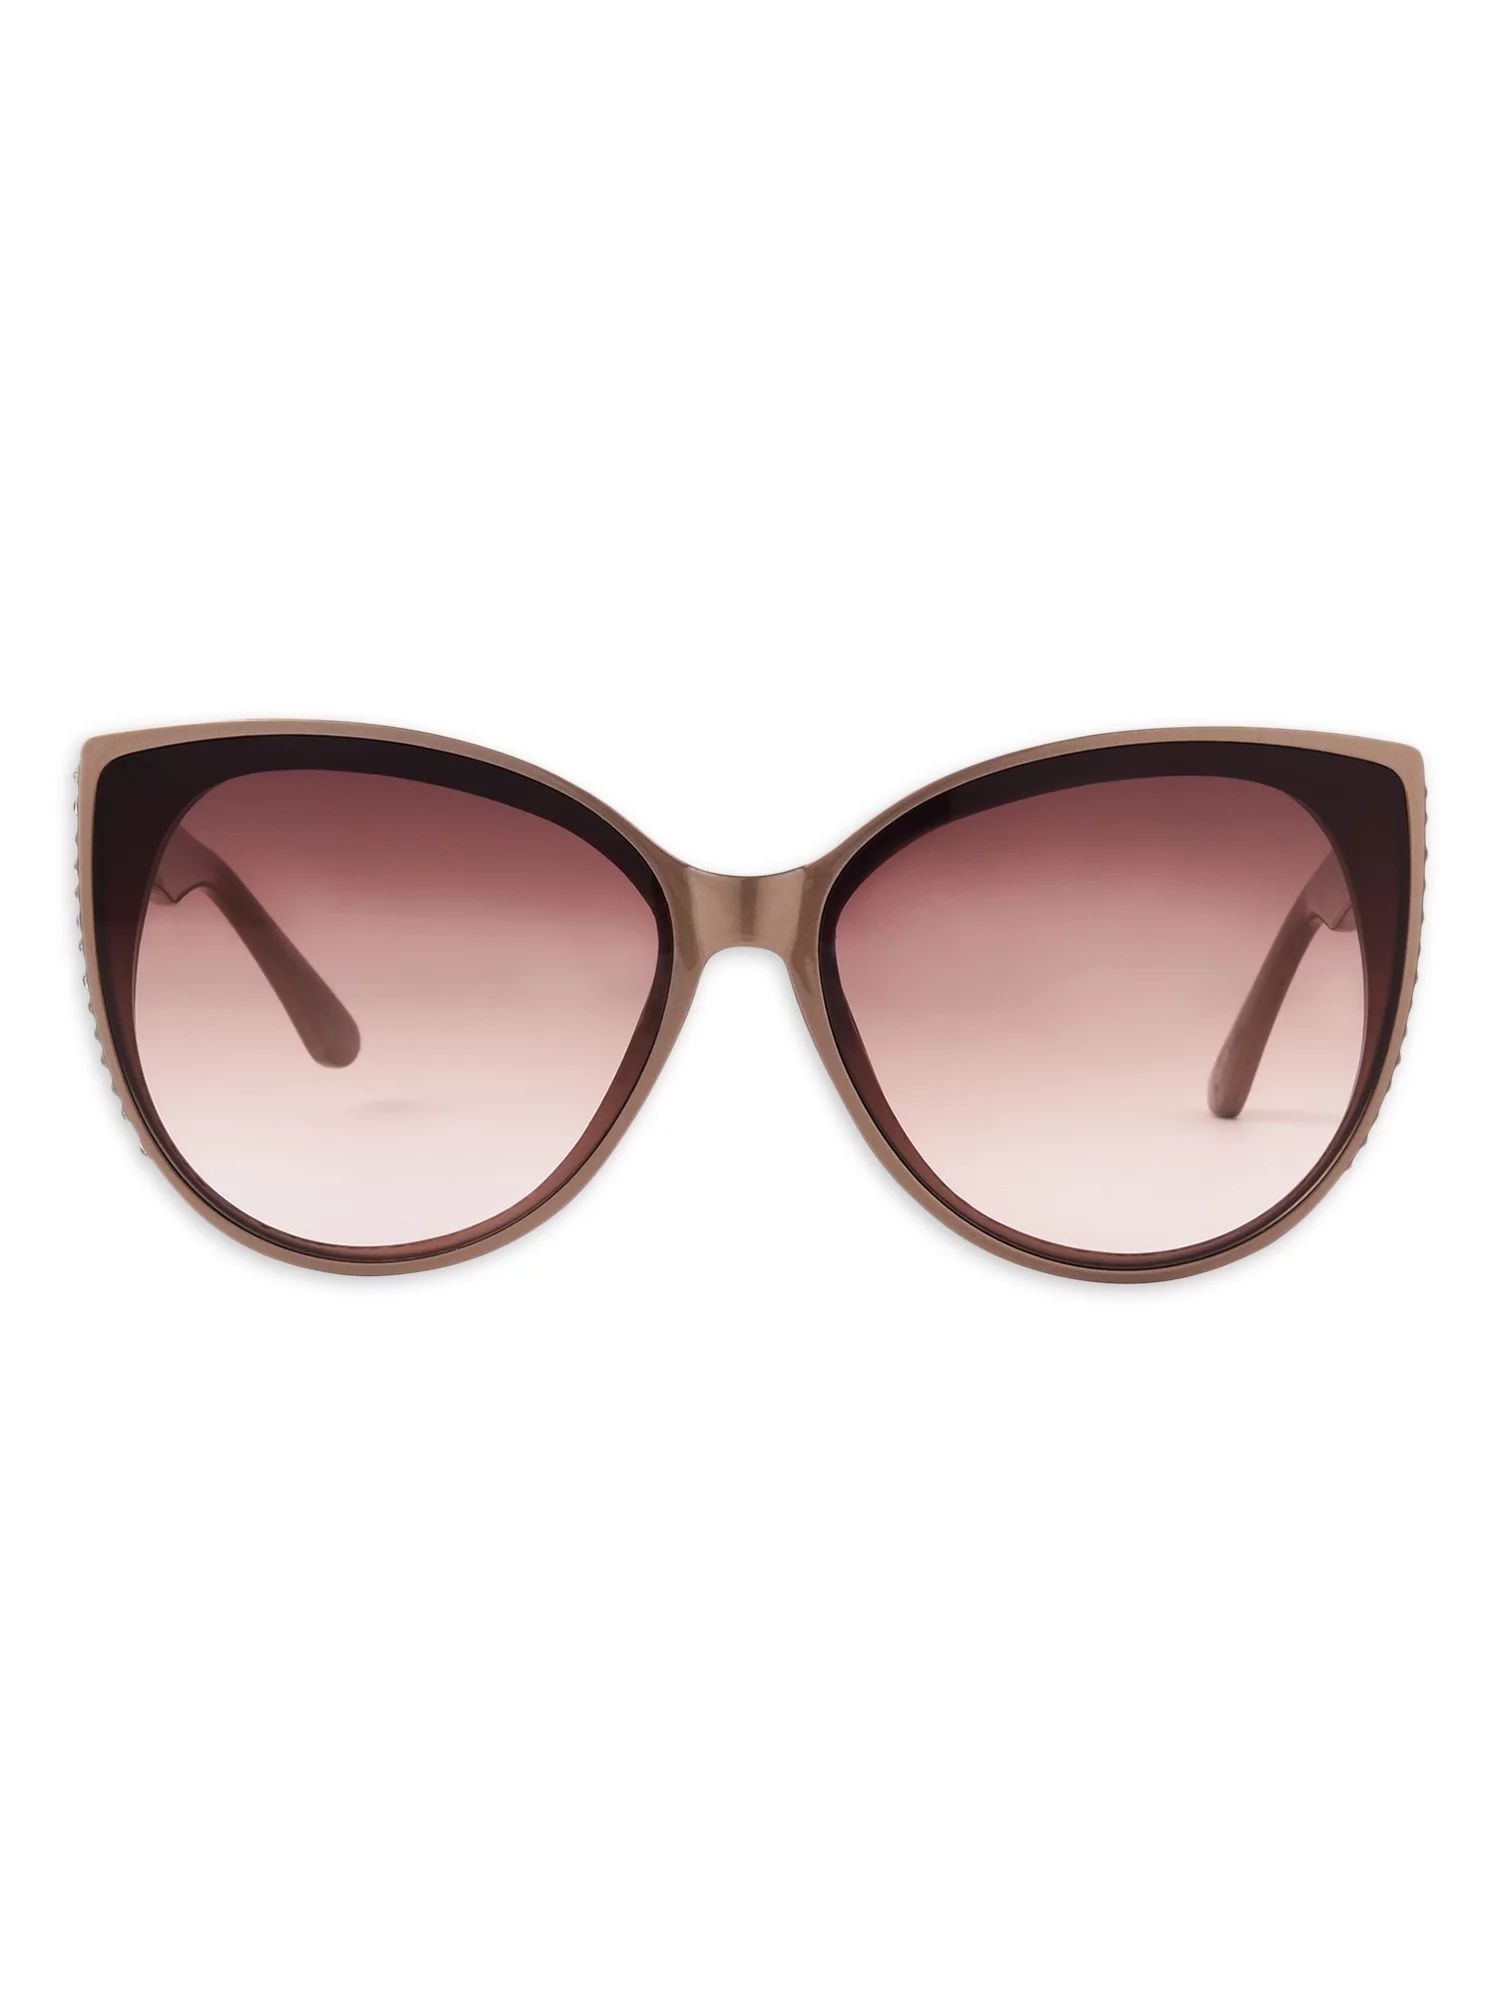 Sofia Vergara Women's Cat Eye Beige Sunglasses | Walmart (US)